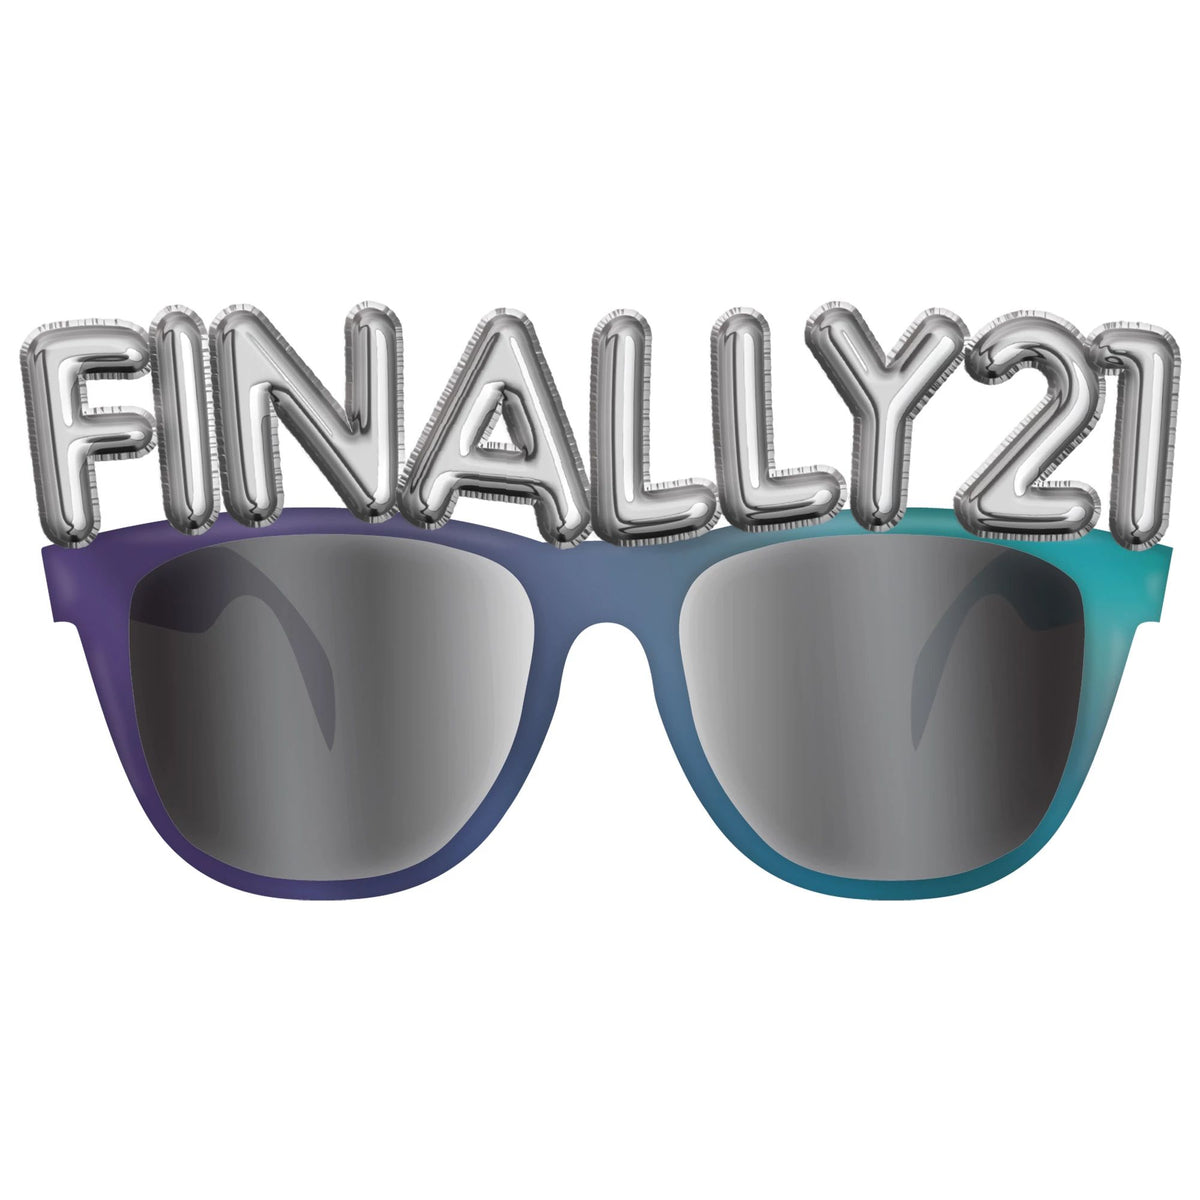 21st Birthday Glasses "Finally 21" UV 400